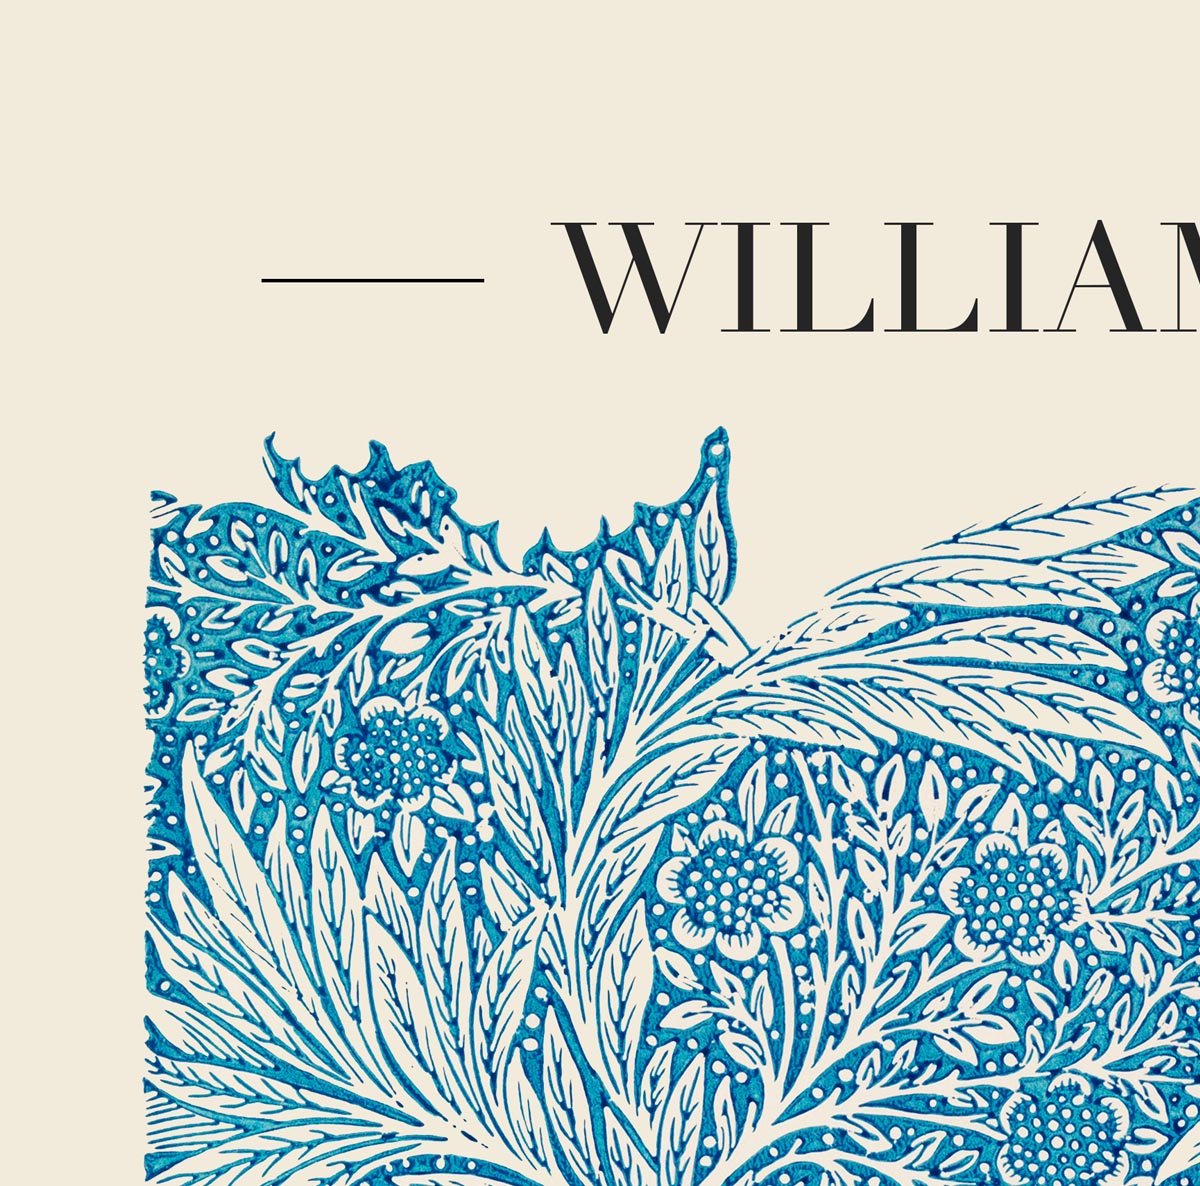 William Morris Blue Marigold Art Exhibition Poster